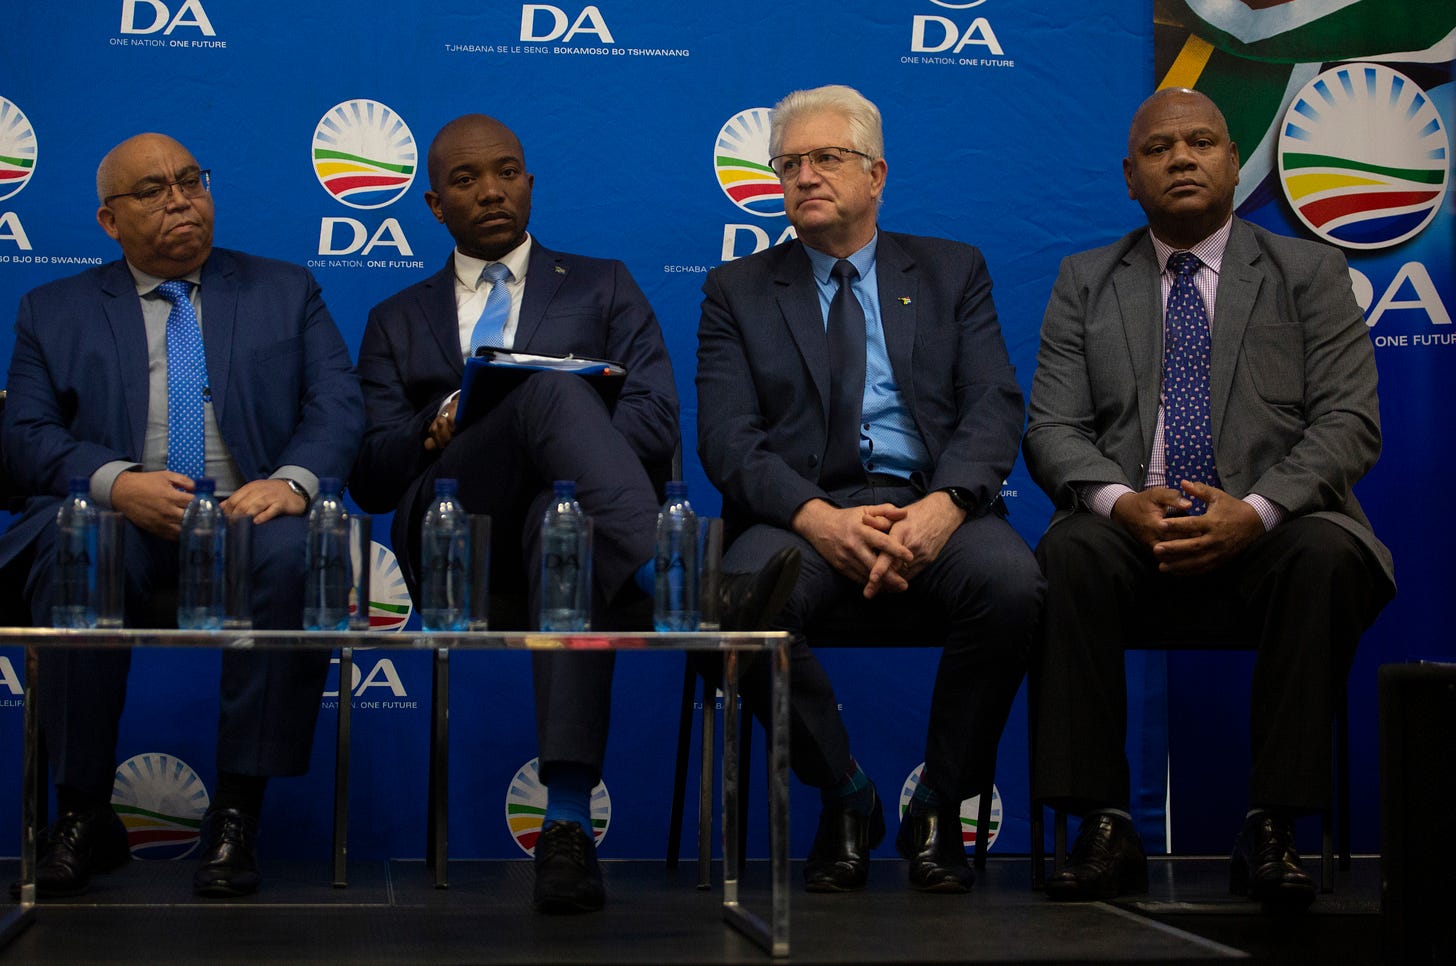 DA picks Alan Winde as Western Cape Premier candidate